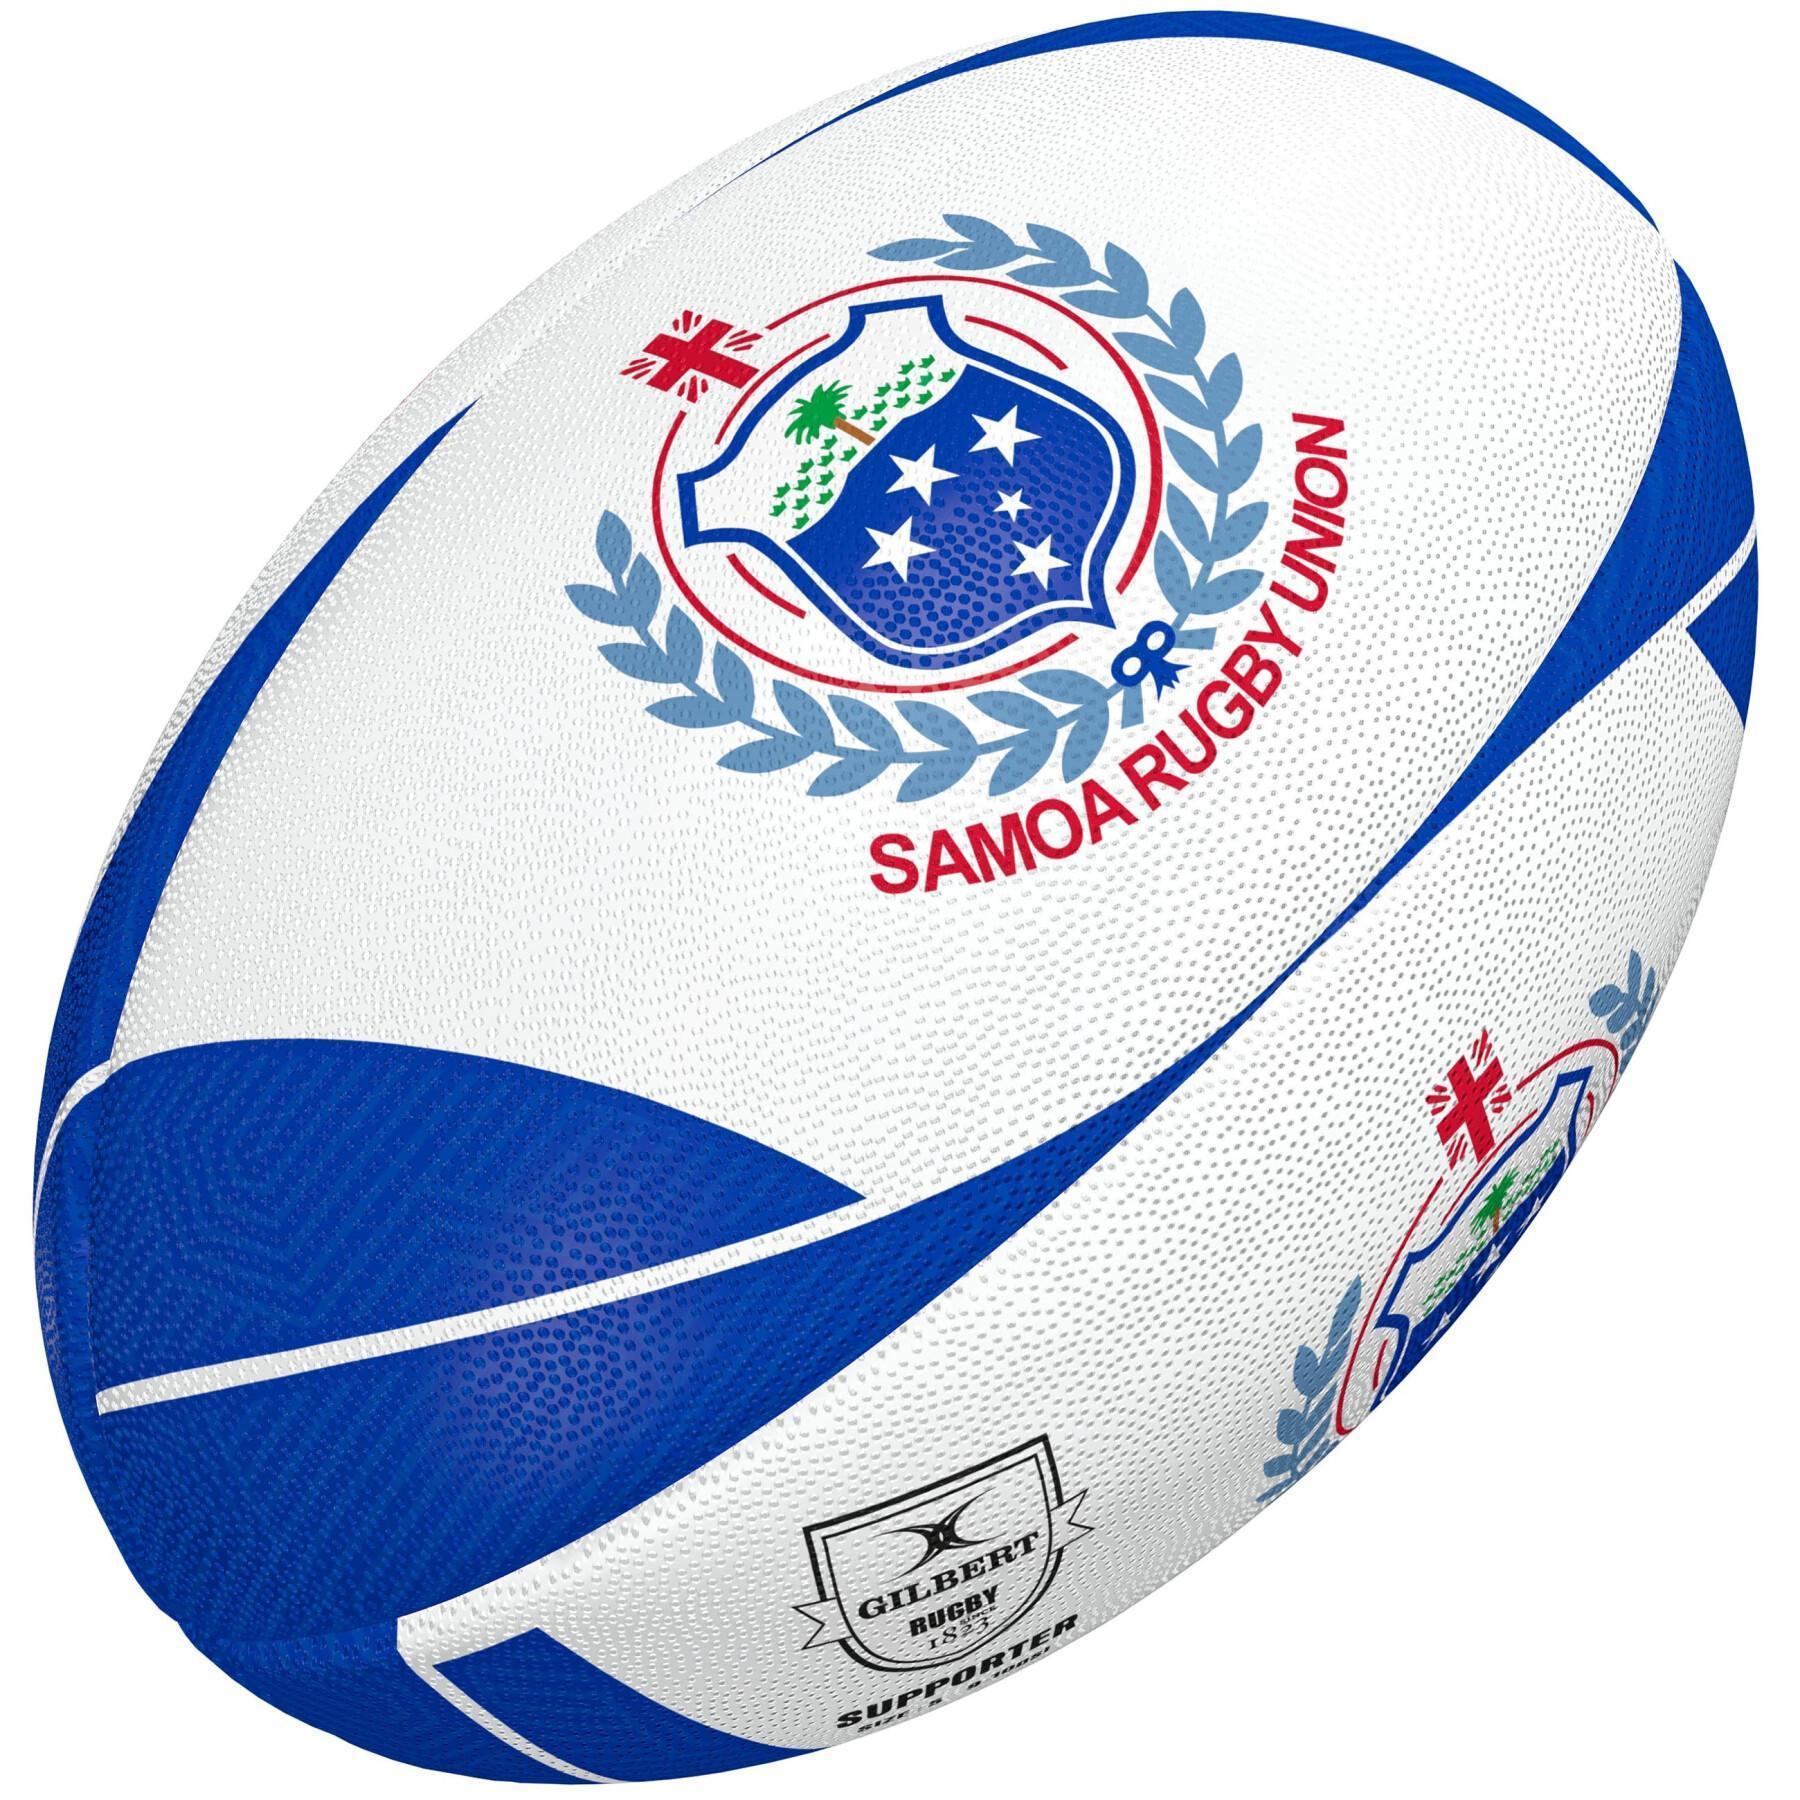 Ball Samoa 2021/22